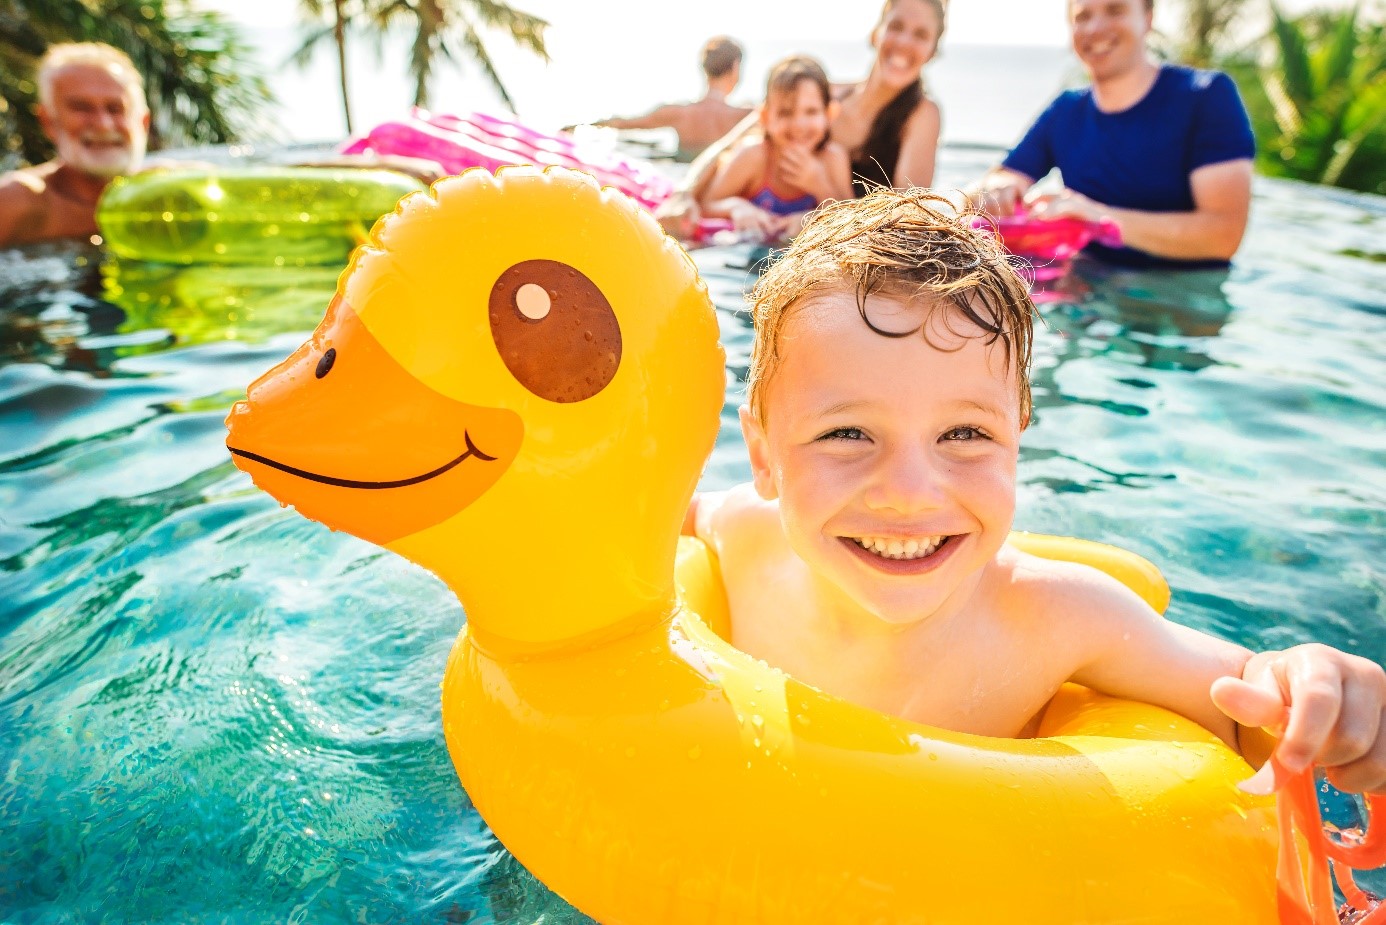 Fête d'enfants autour de la piscine: 10 conseils pour prévenir la noyade